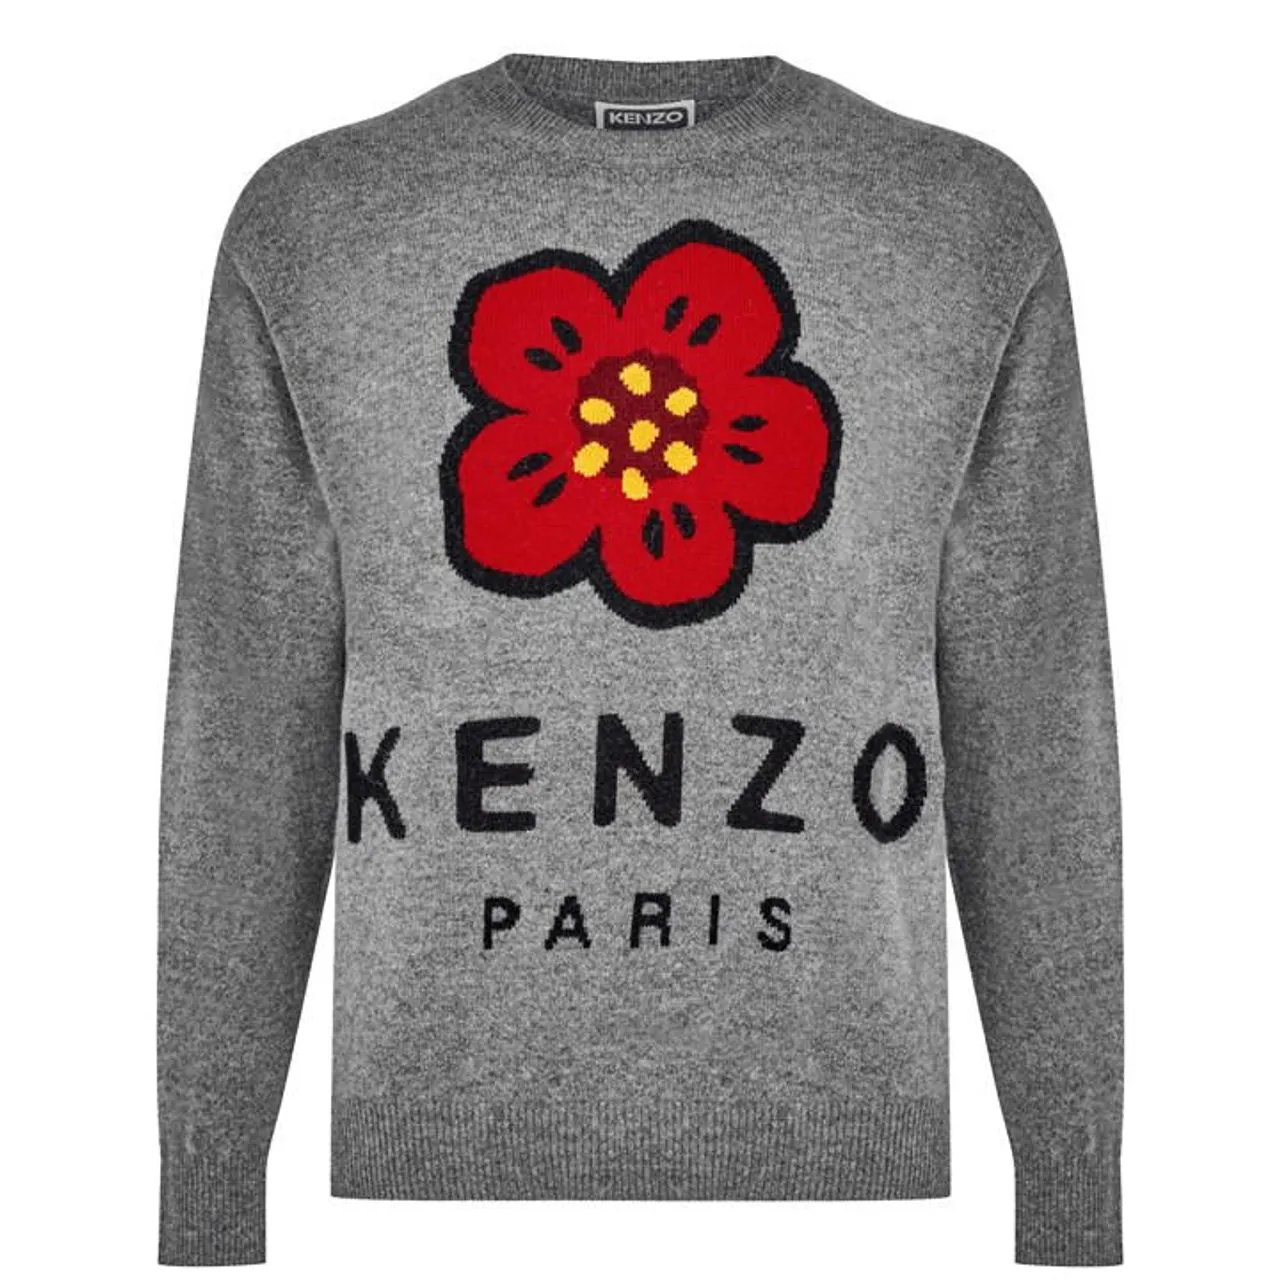 KENZO Boke Intarsia Crew Sweater - Grey